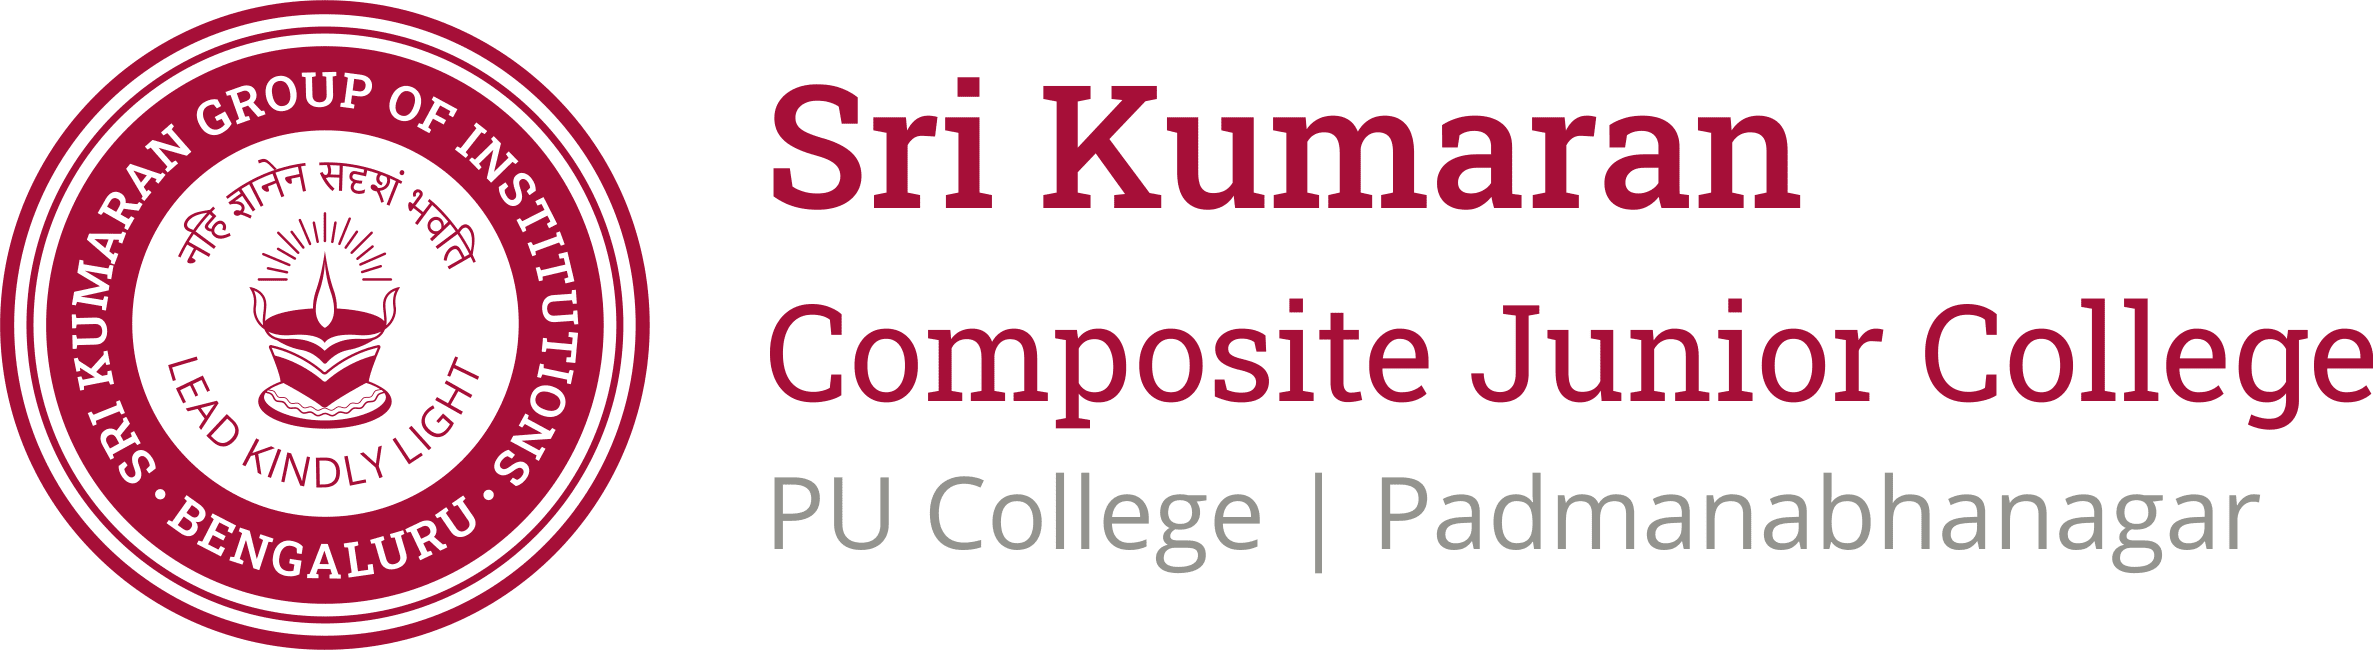 Sri Kumaran Childrens Home - PU College | Padmanabhanagar